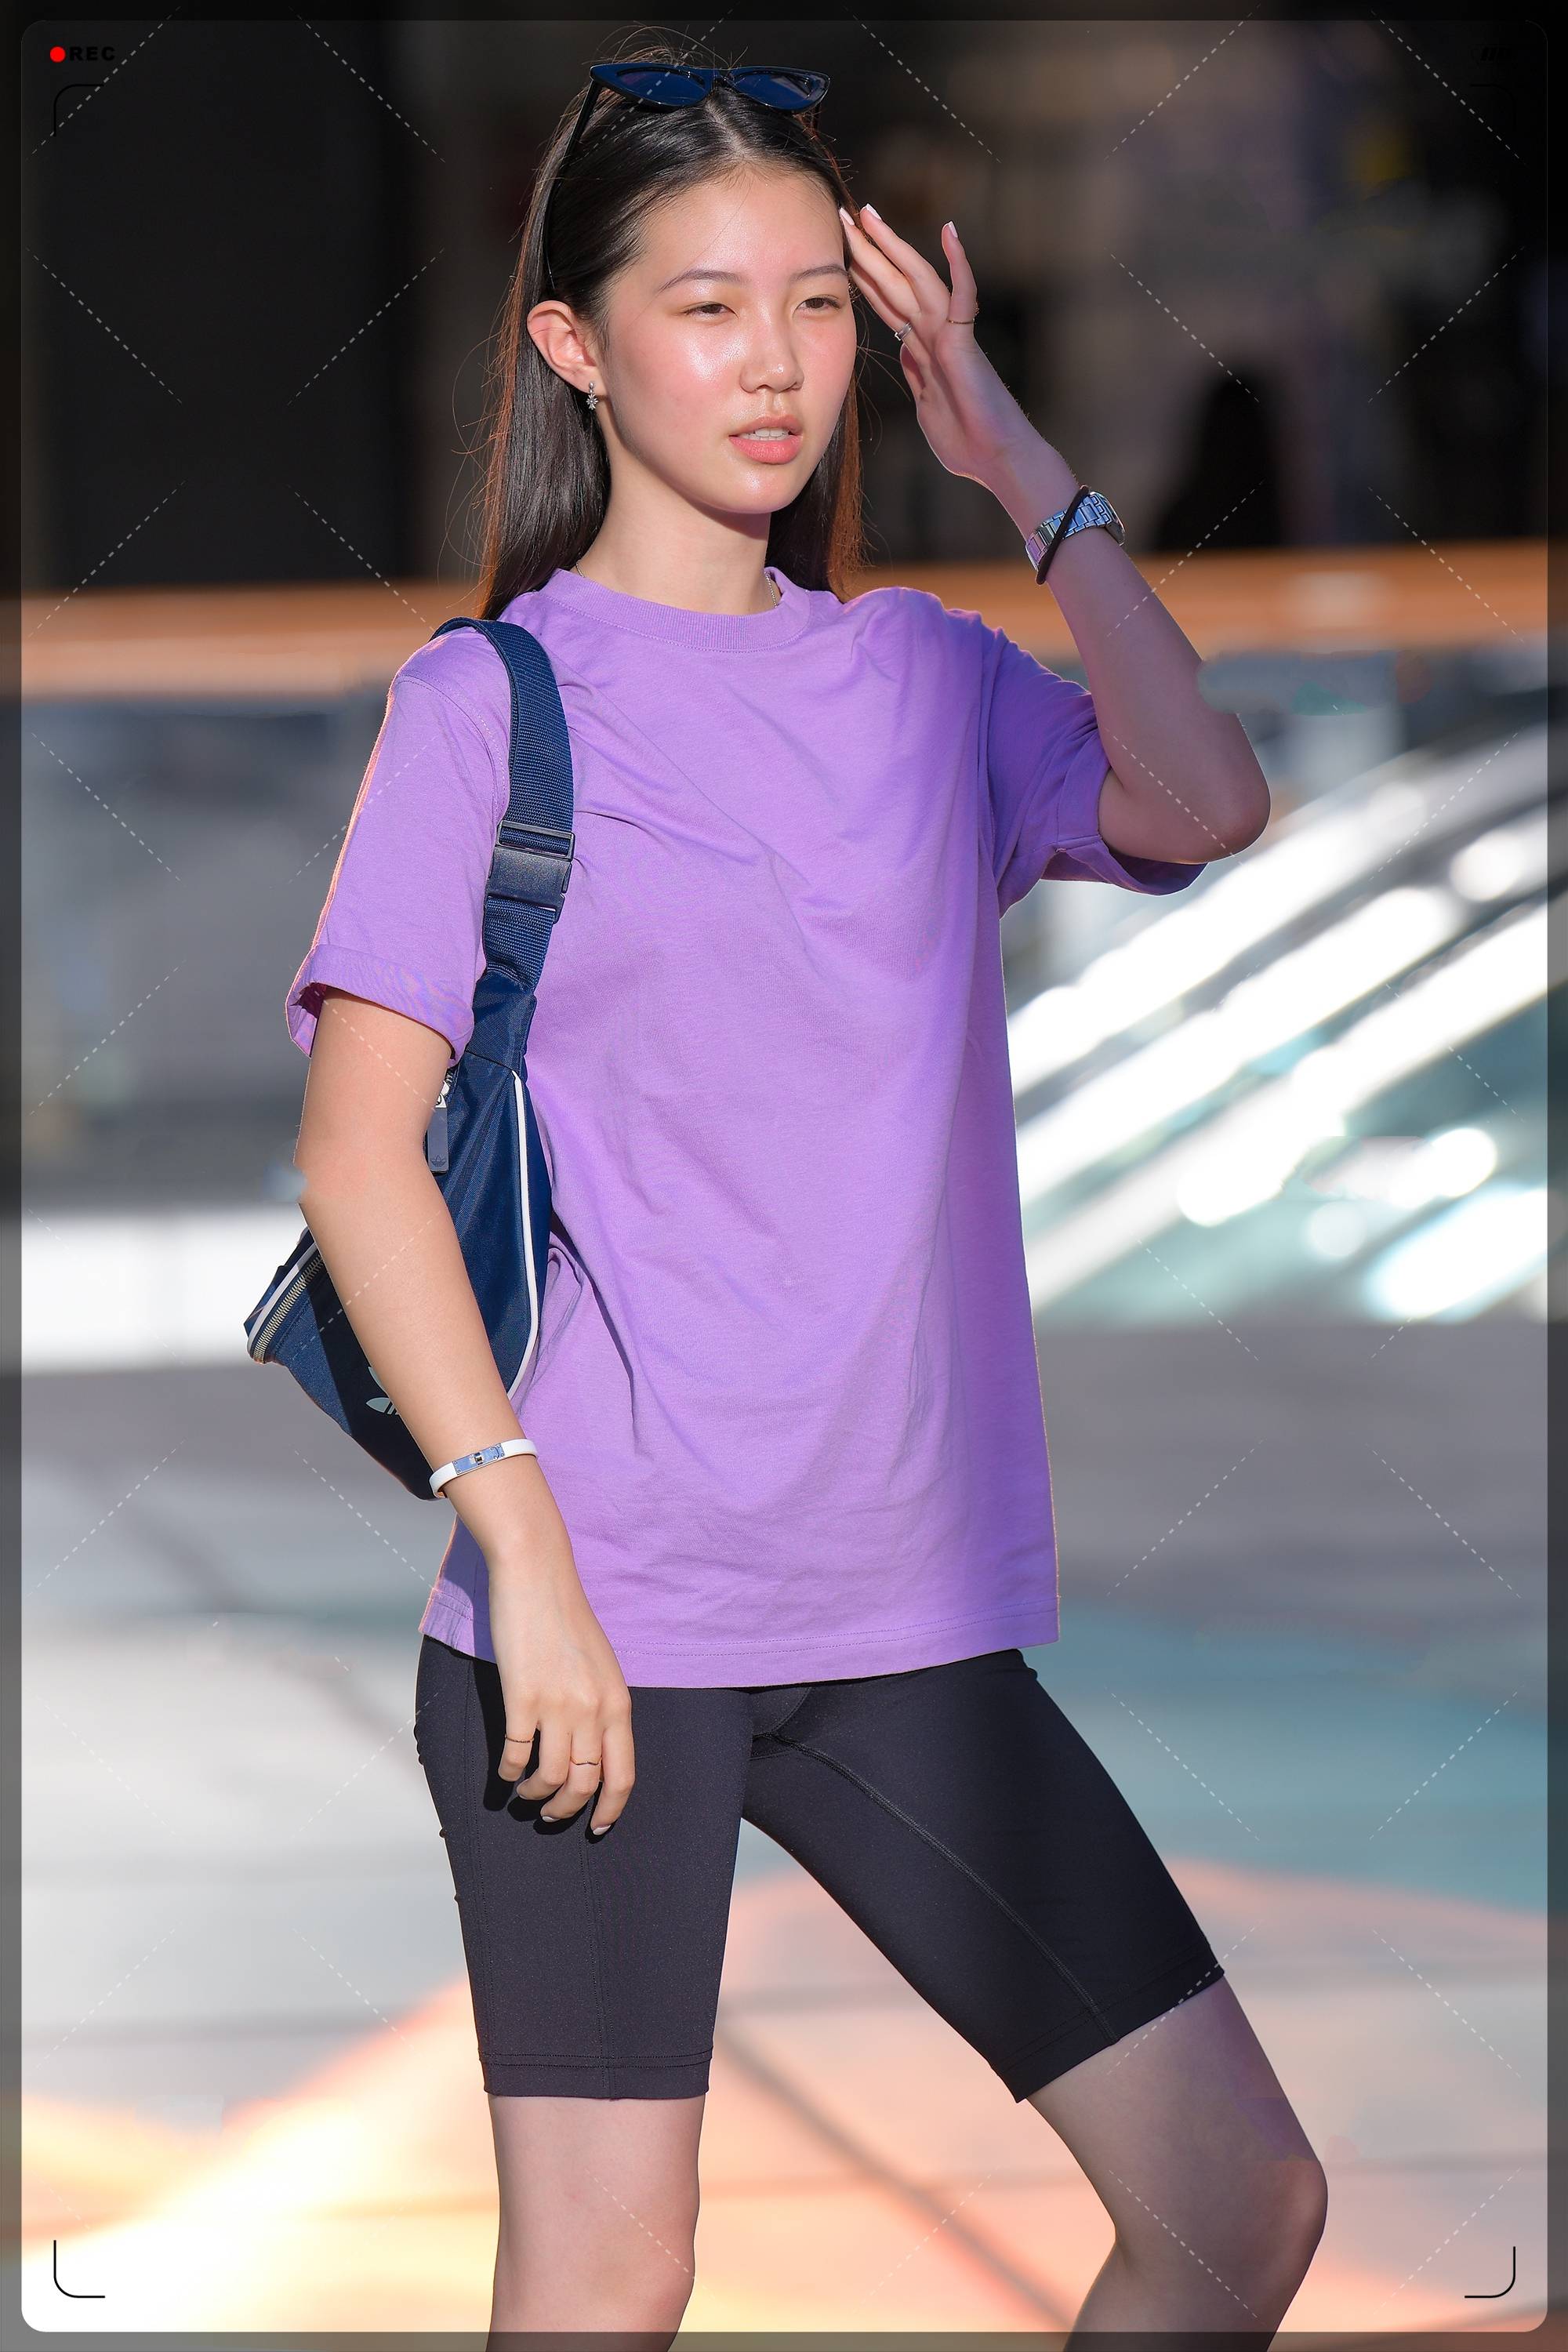 原创紫色短袖高级有质感,紧身短裤尽显腿长优势,这身搭配美爆了